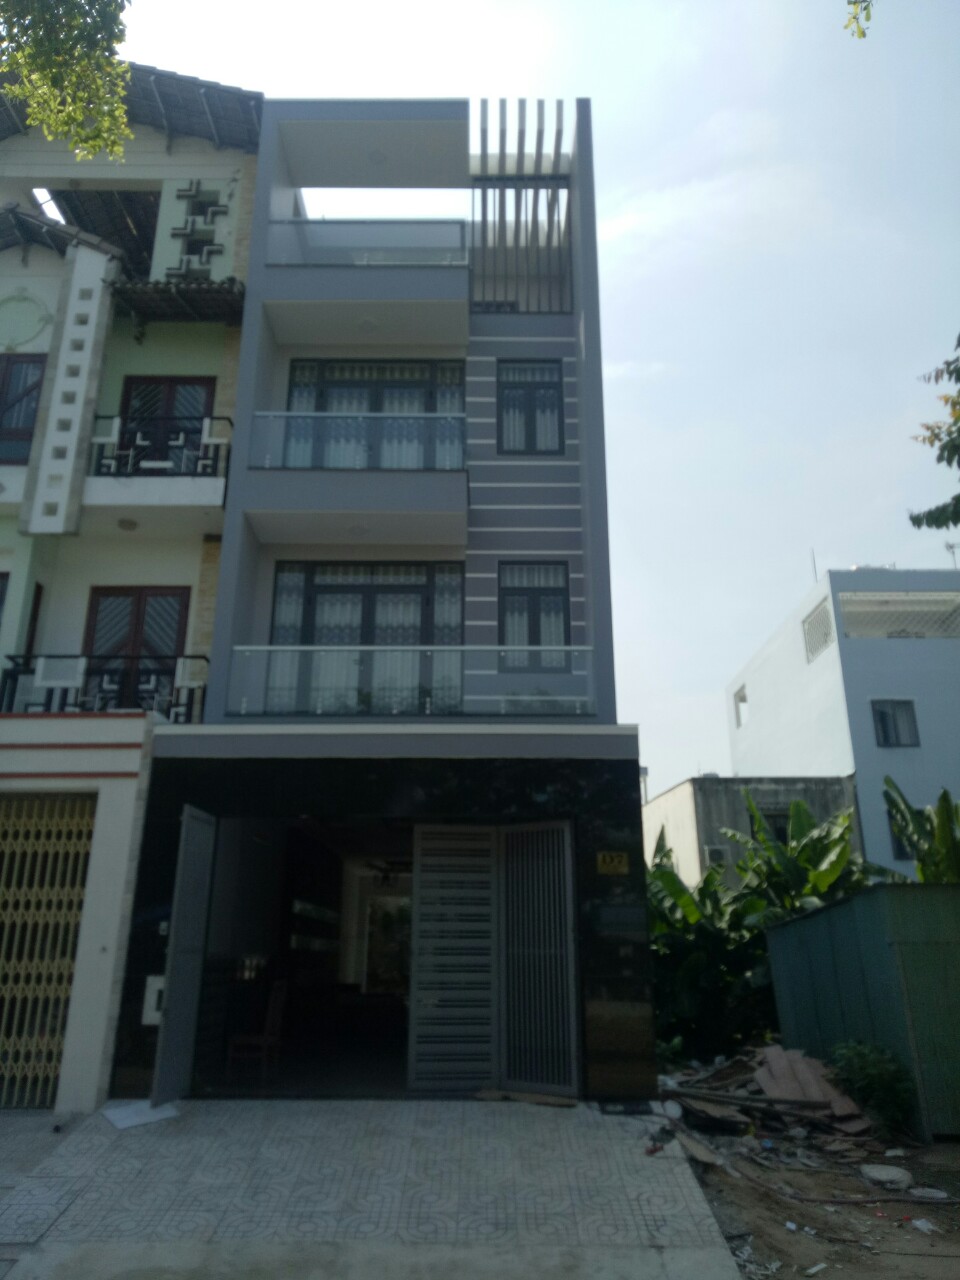 Bán nhà đường D5 khu tái định cư Phạm Hữu Lầu, Phường Phú Mỹ, Quận 7, TP HCM: DT: 90m2 